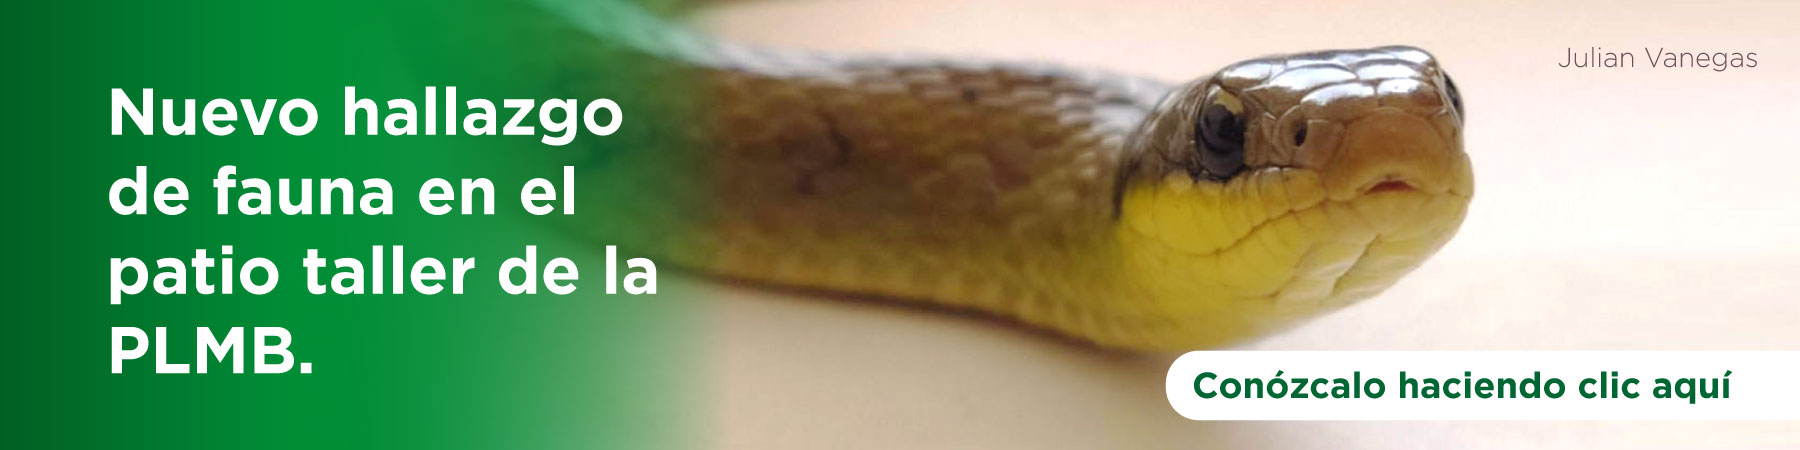 Serpiente hallada en el patio taller del metro de Bogotá